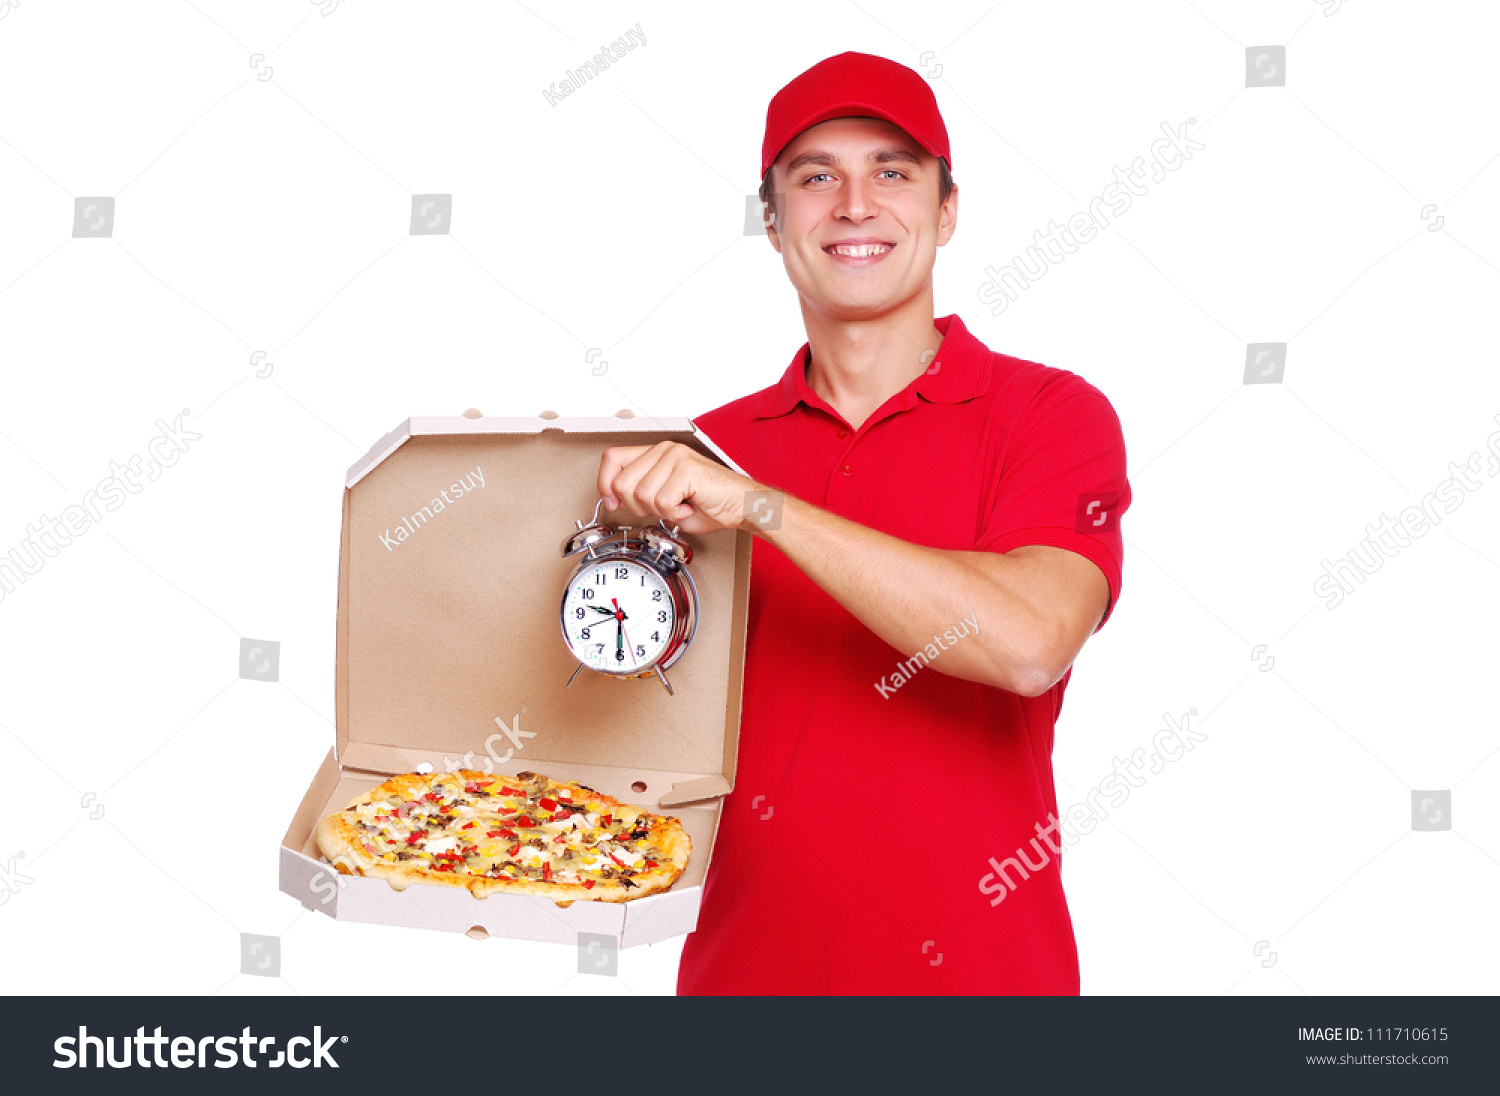 быстрая доставка пиццы 30 мин фото 54